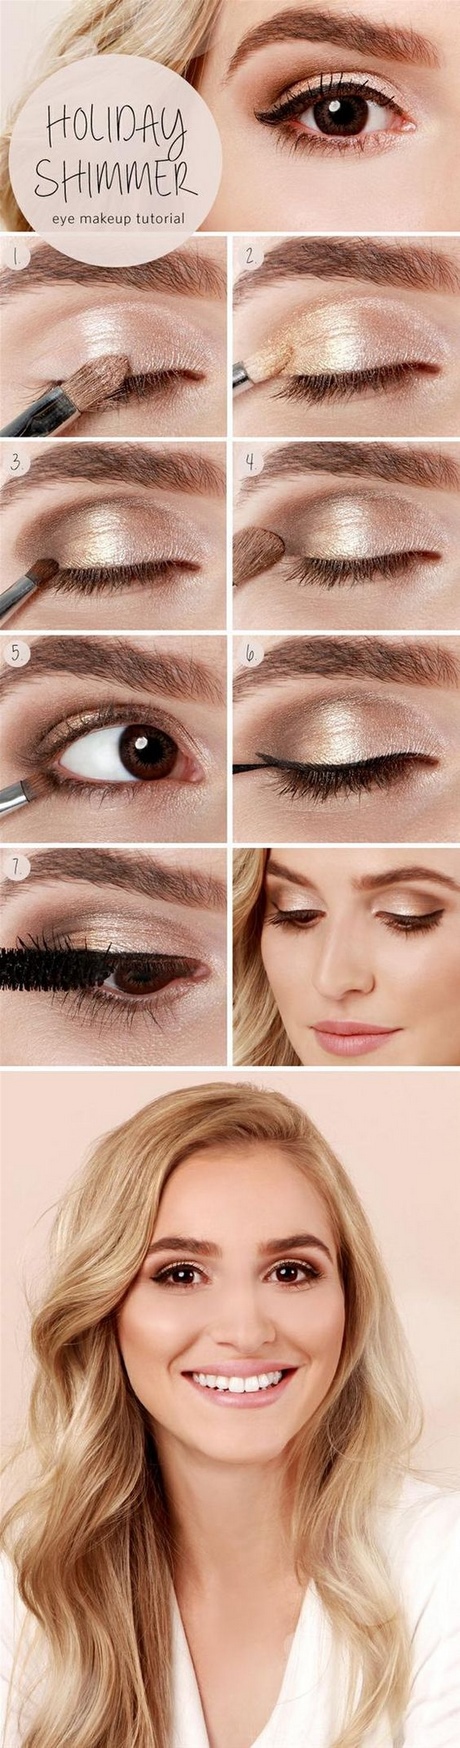 Bruine ogen oog make-up tutorial